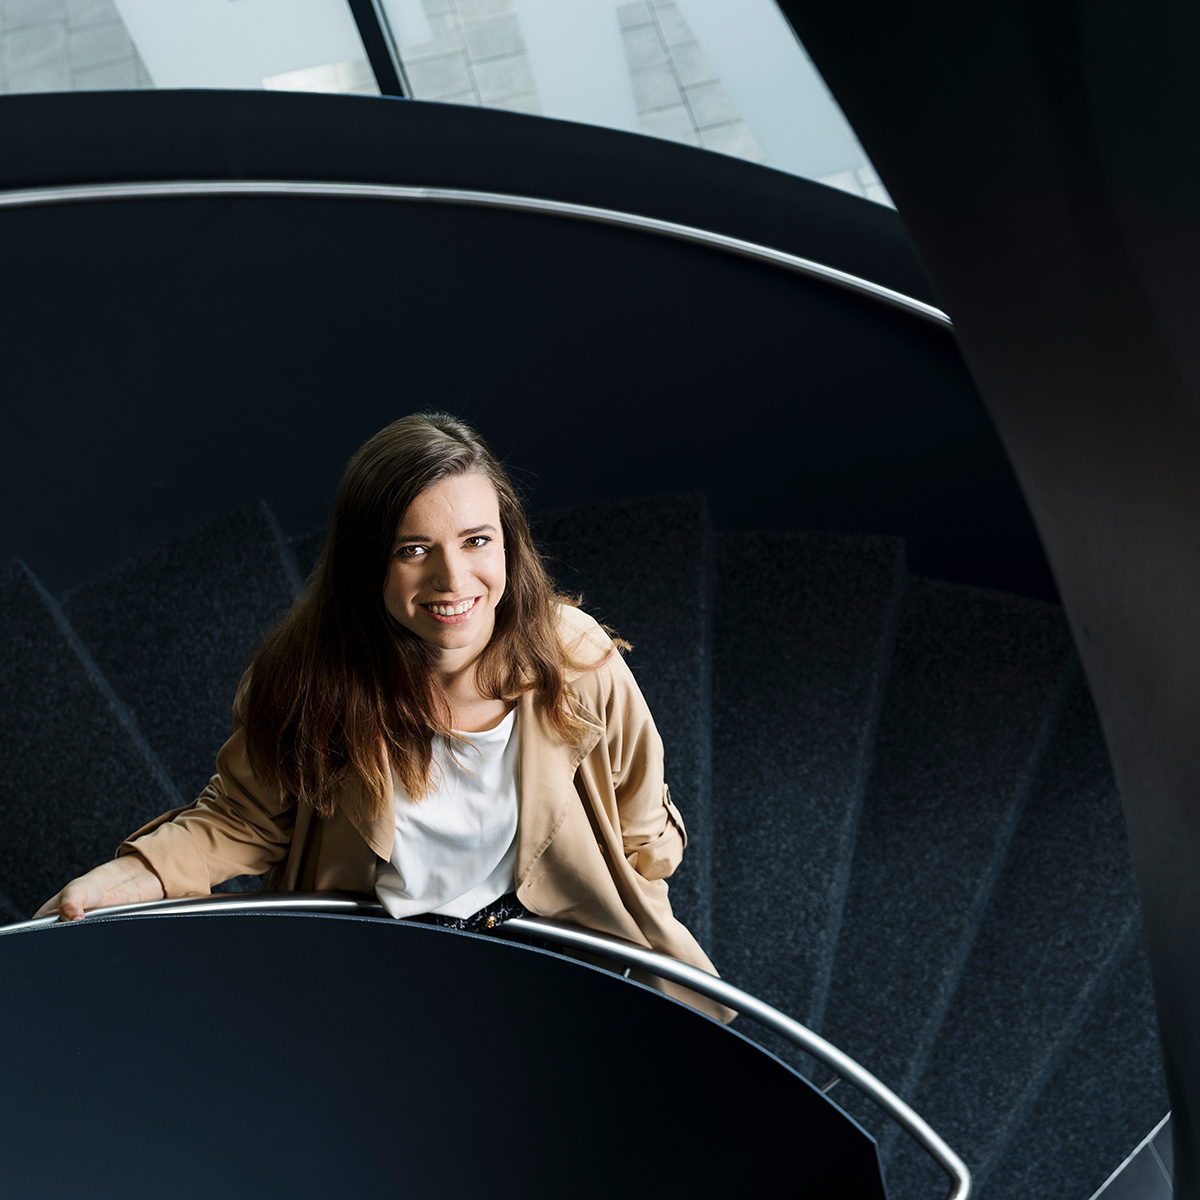 Christina Kritz steht auf einer tieferliegenden Treppenstufe und lächelt nach oben in die Kamera